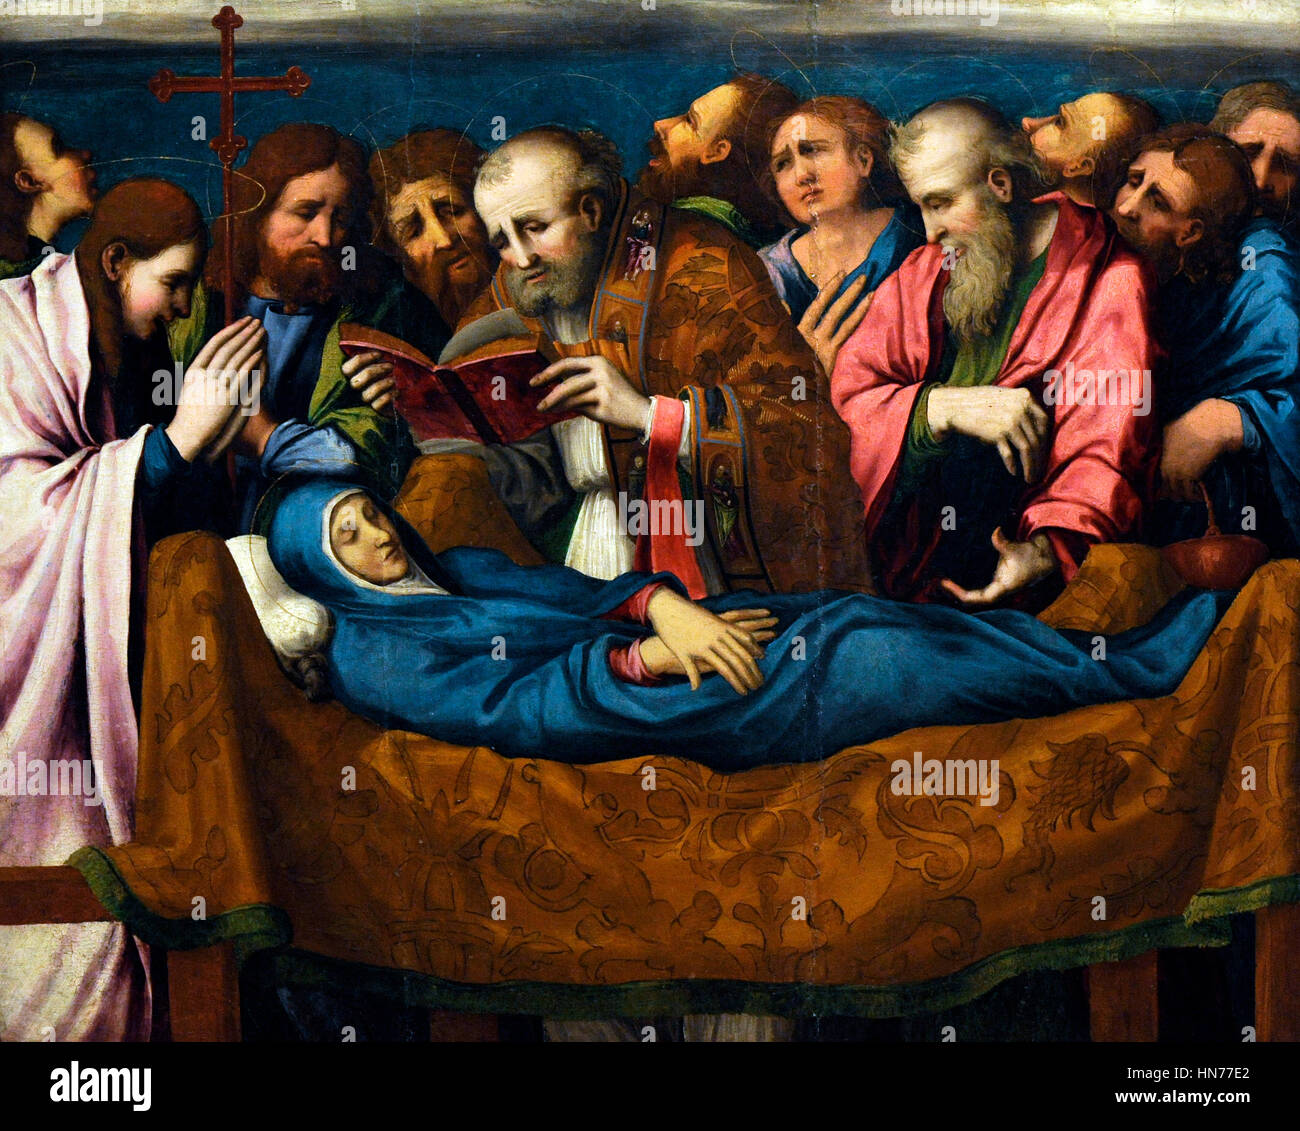 Marco Cardisco (1486-1542). Painer italiano. Dormición de la Madre de Dios. Aceite en la tabla. 1535-40. Museo de Capodimonte. Nápoles. Italia. Foto de stock